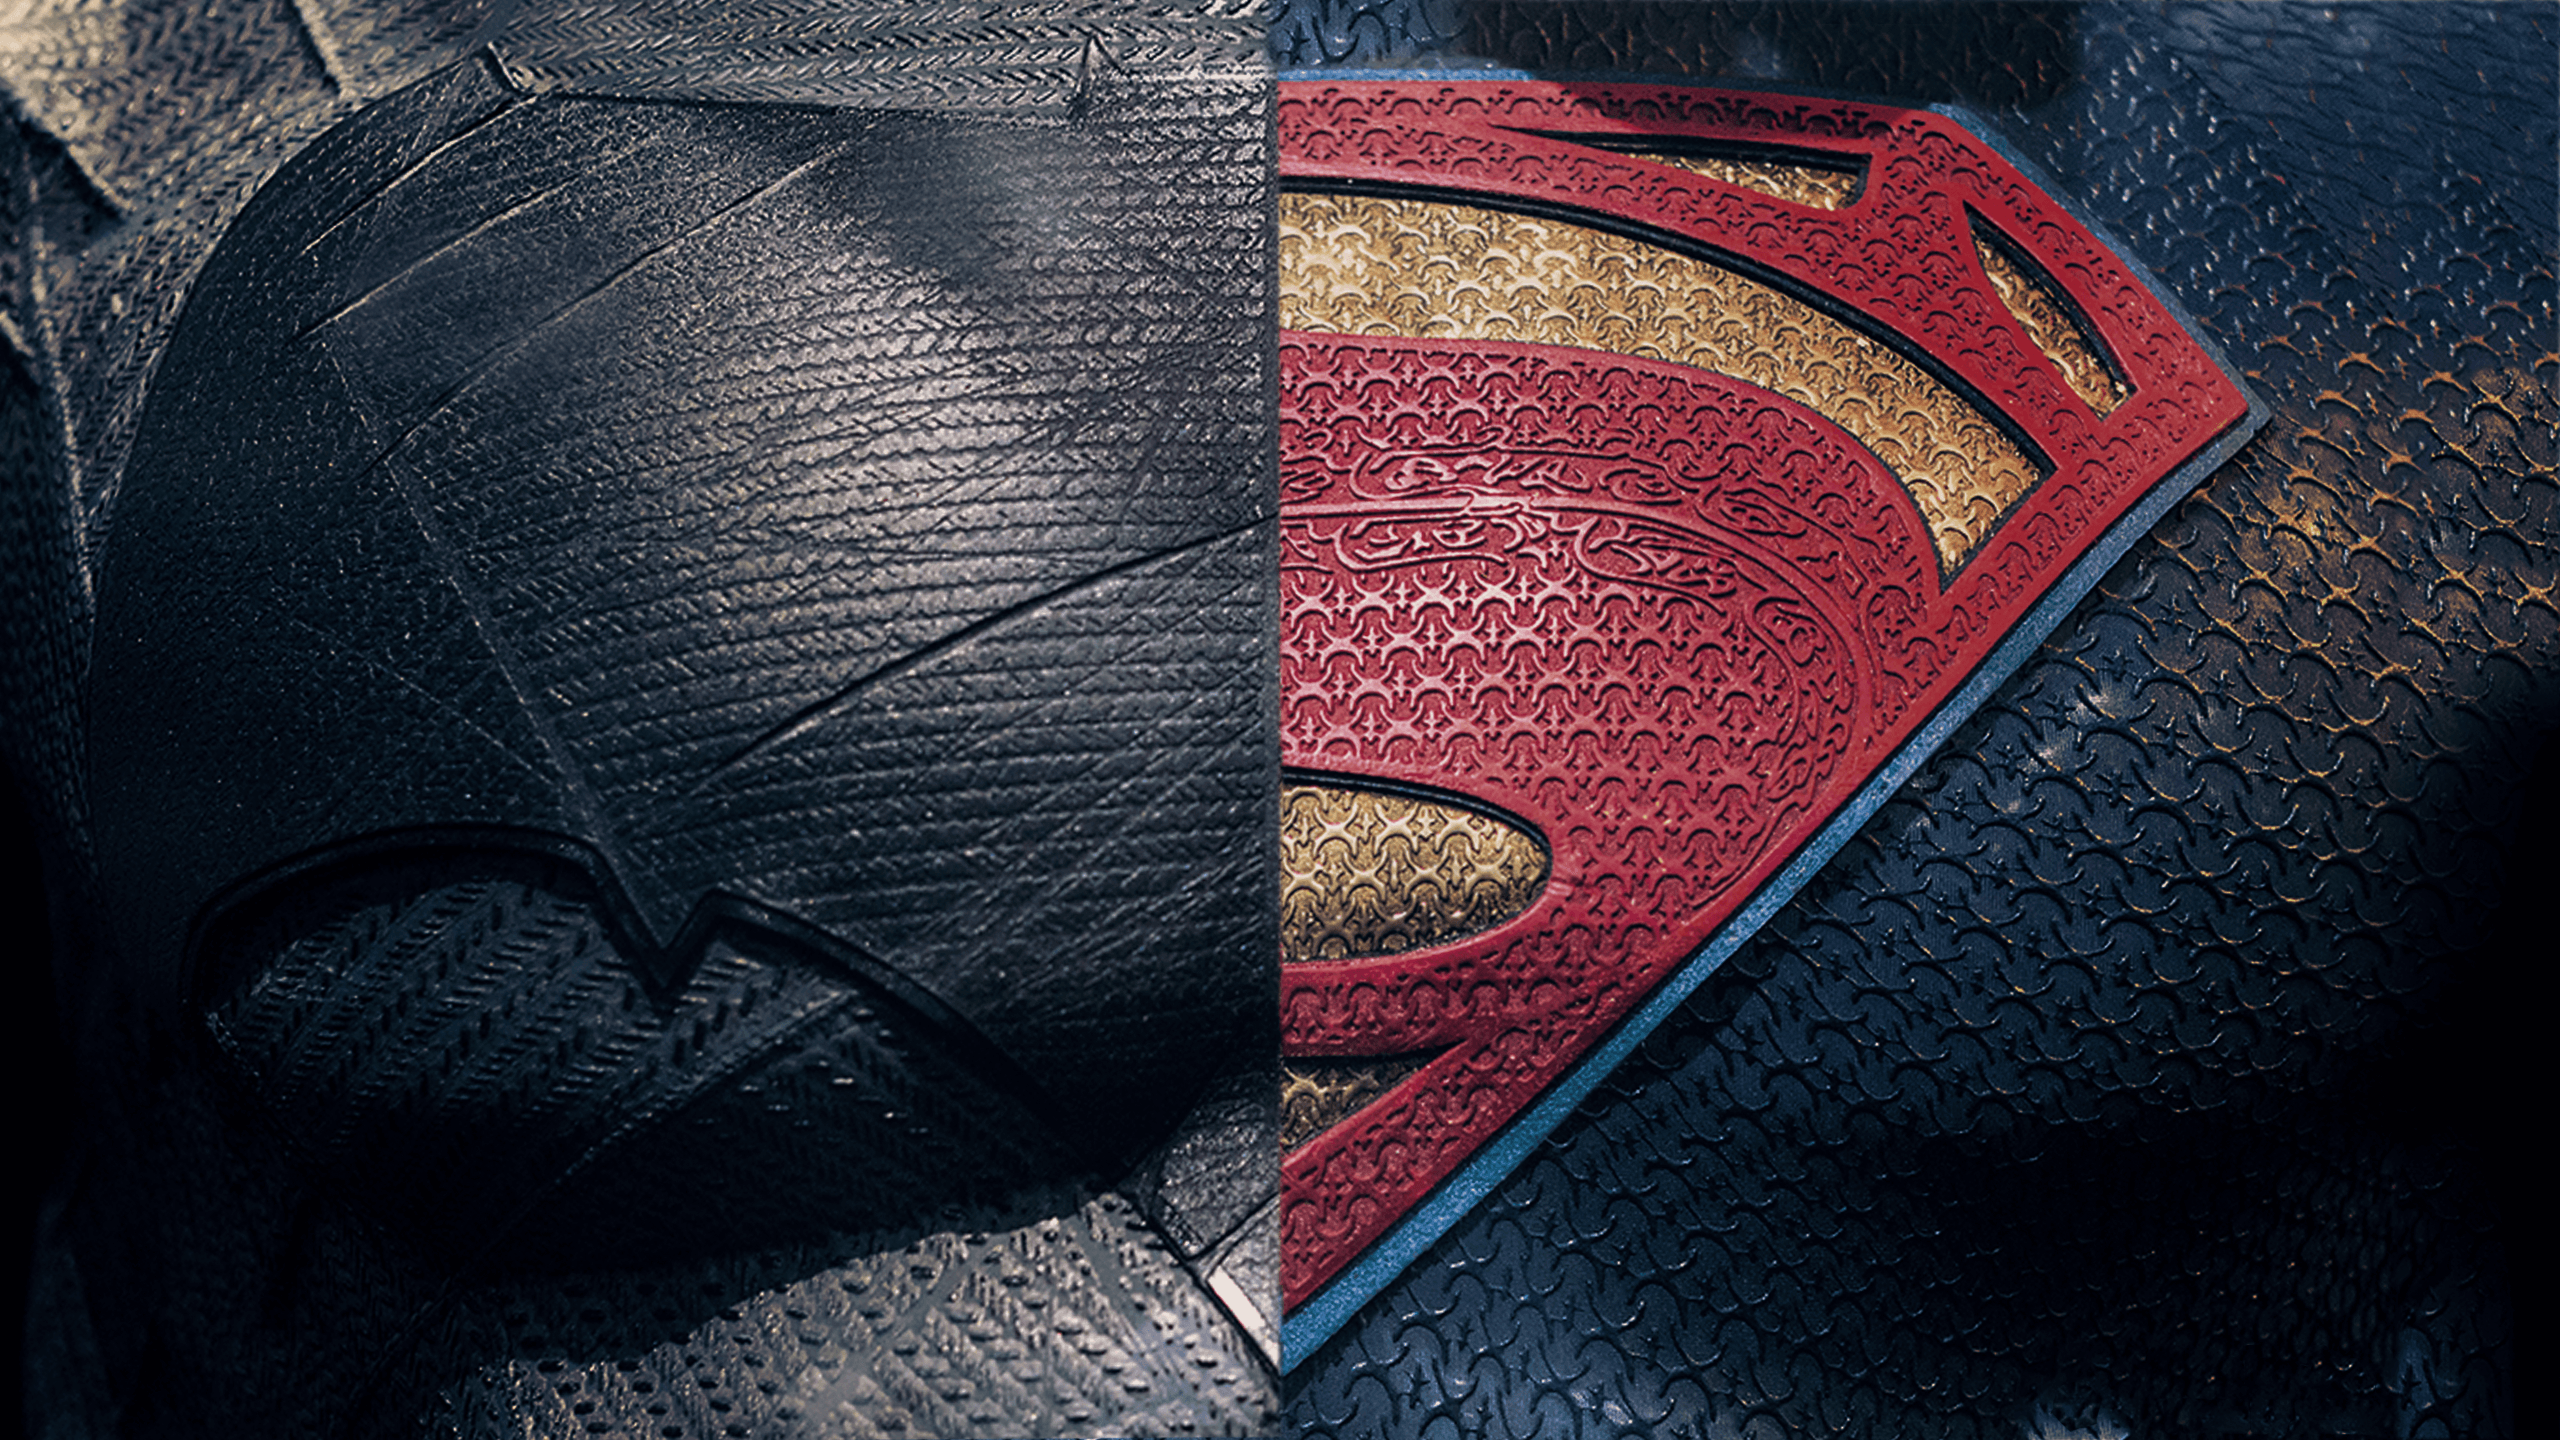 Superman Wallpaper, 100% Full HDQ Superman Pics